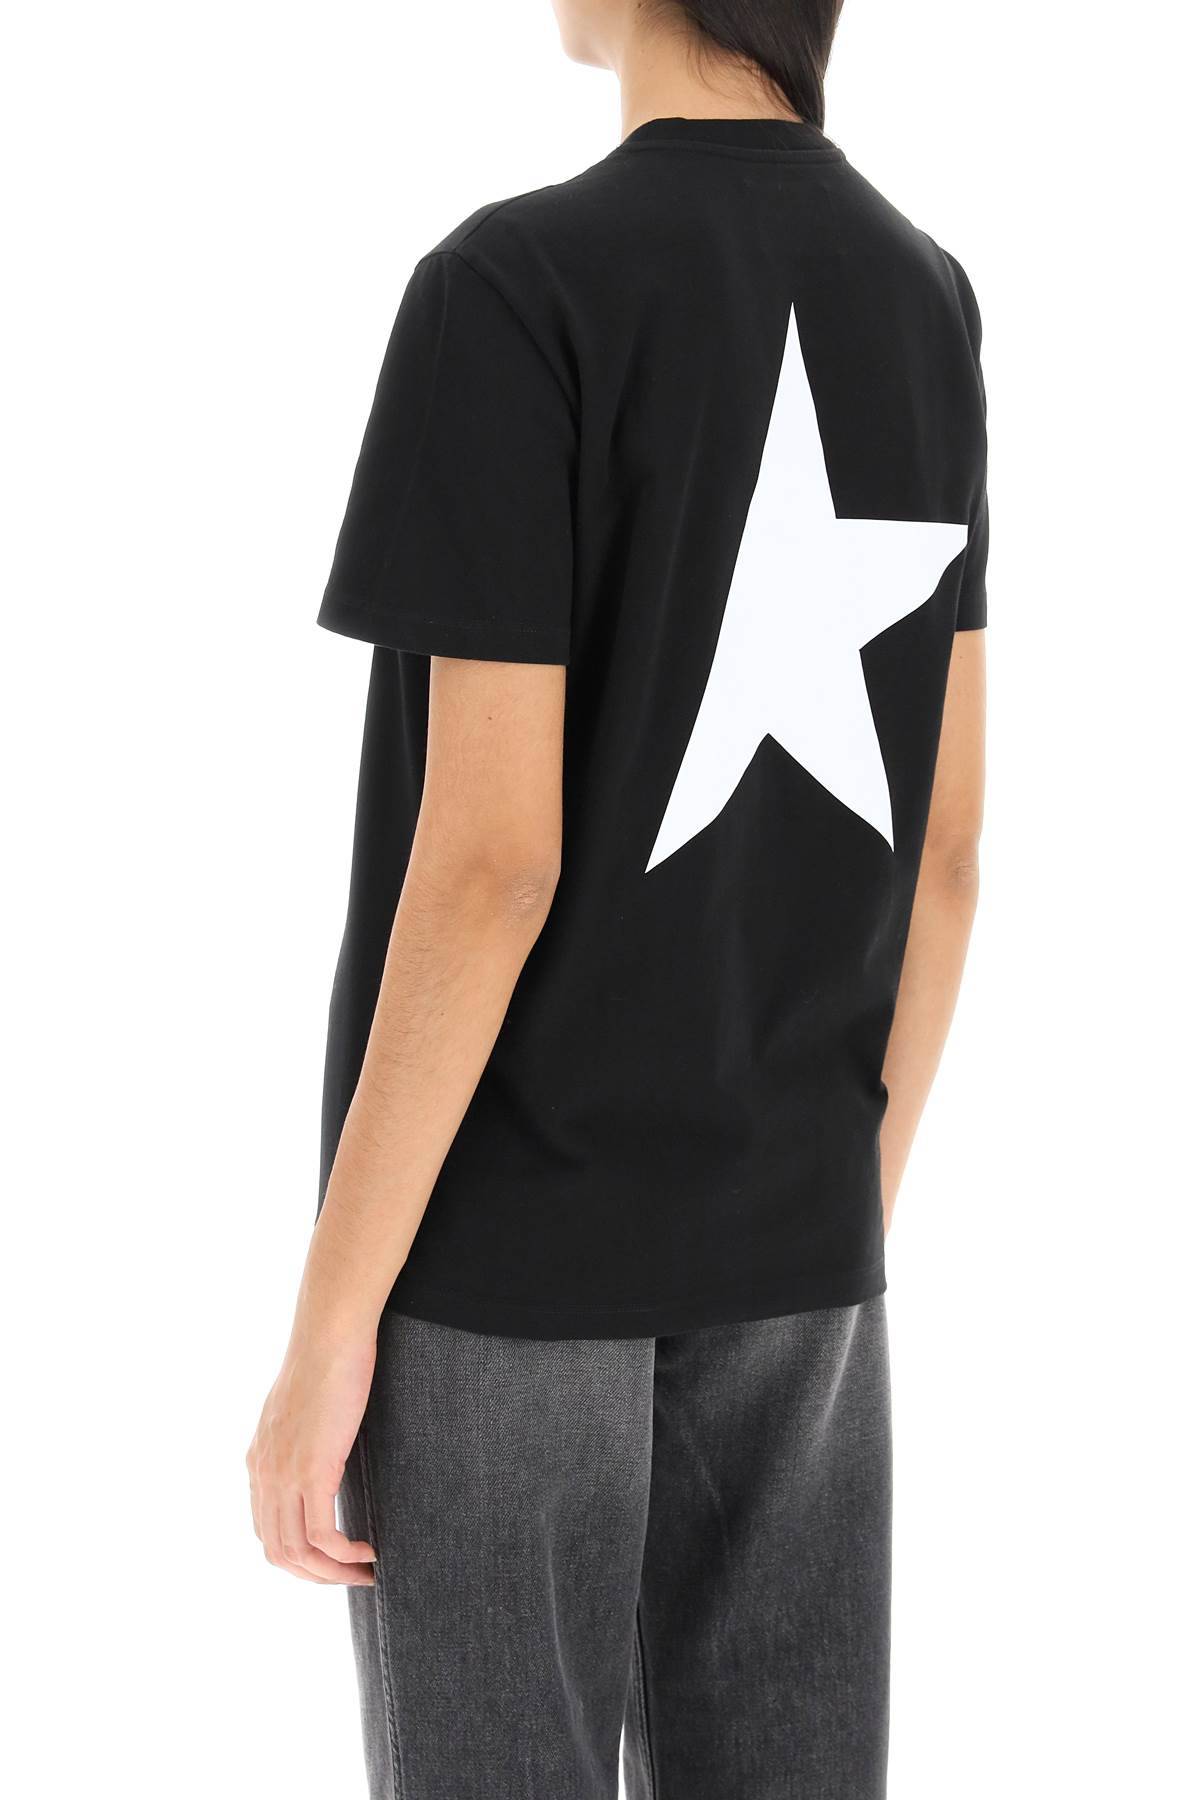 Shop Golden Goose Star T-shirt In Black